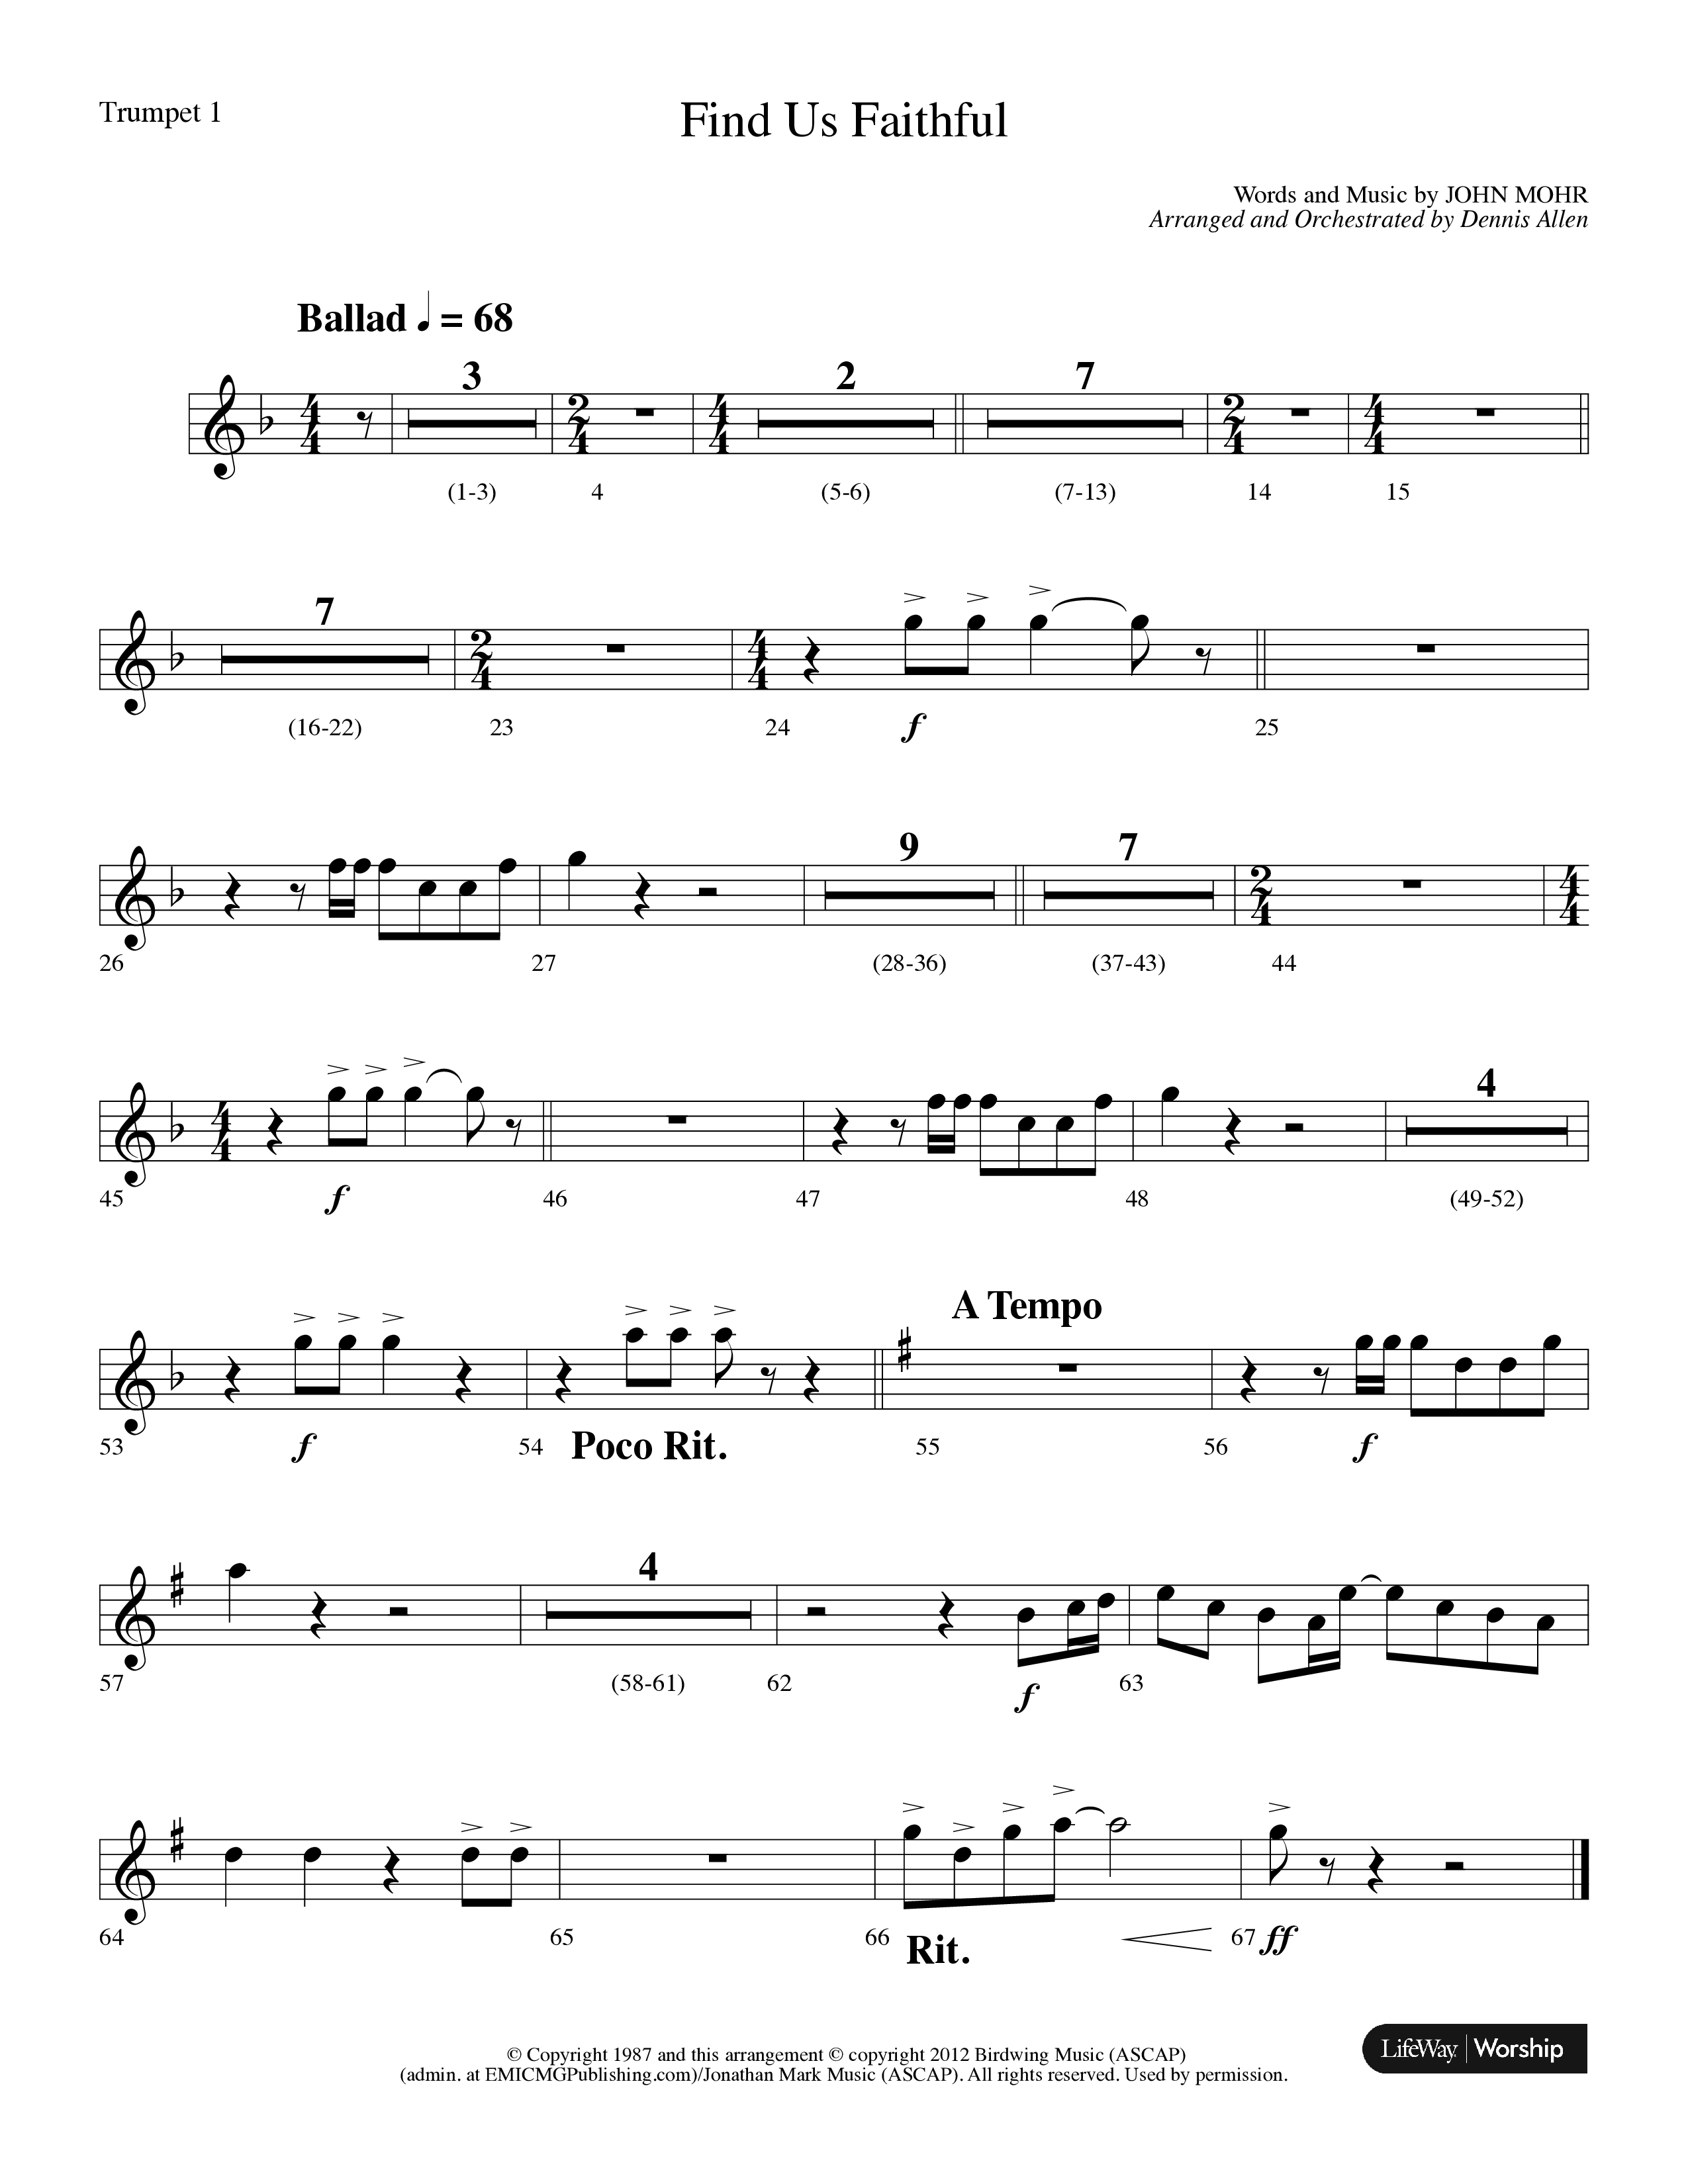 Find Us Faithful (Choral Anthem SATB) Trumpet 1 (Lifeway Choral / Arr. Dennis Allen)